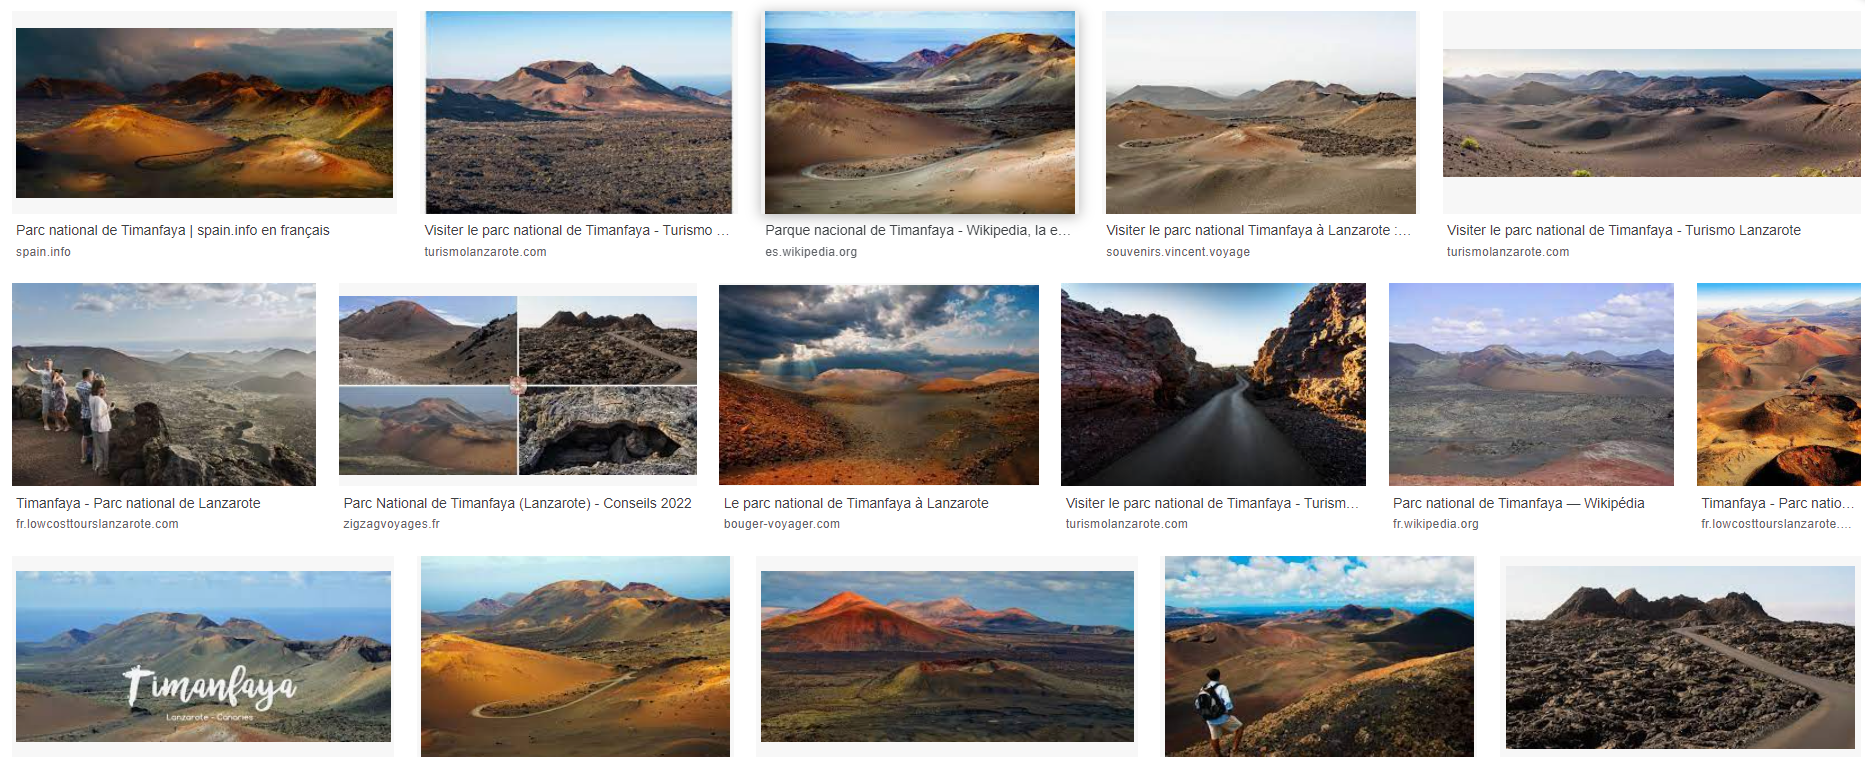 Voici à quoi ressemble le parc national de Timanfaya sur Google Images